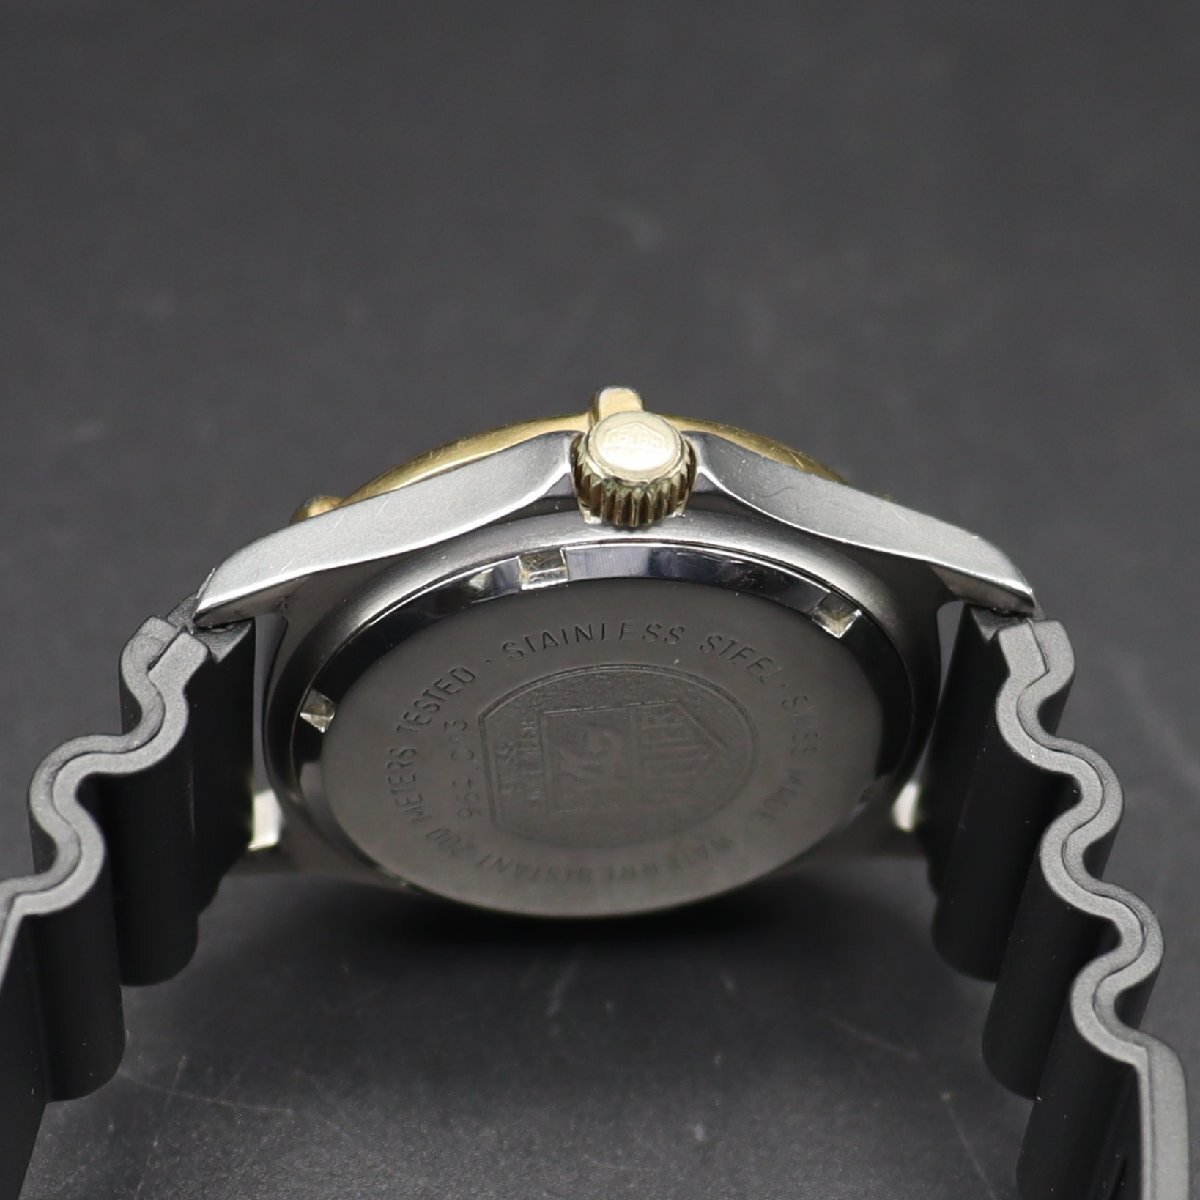 TAG HEUER タグホイヤー プロフェッショナル 2000 クォーツ 200M防水 964.013 デイト コンビカラー スイス 新品ラバーベルト メンズ腕時計の画像7